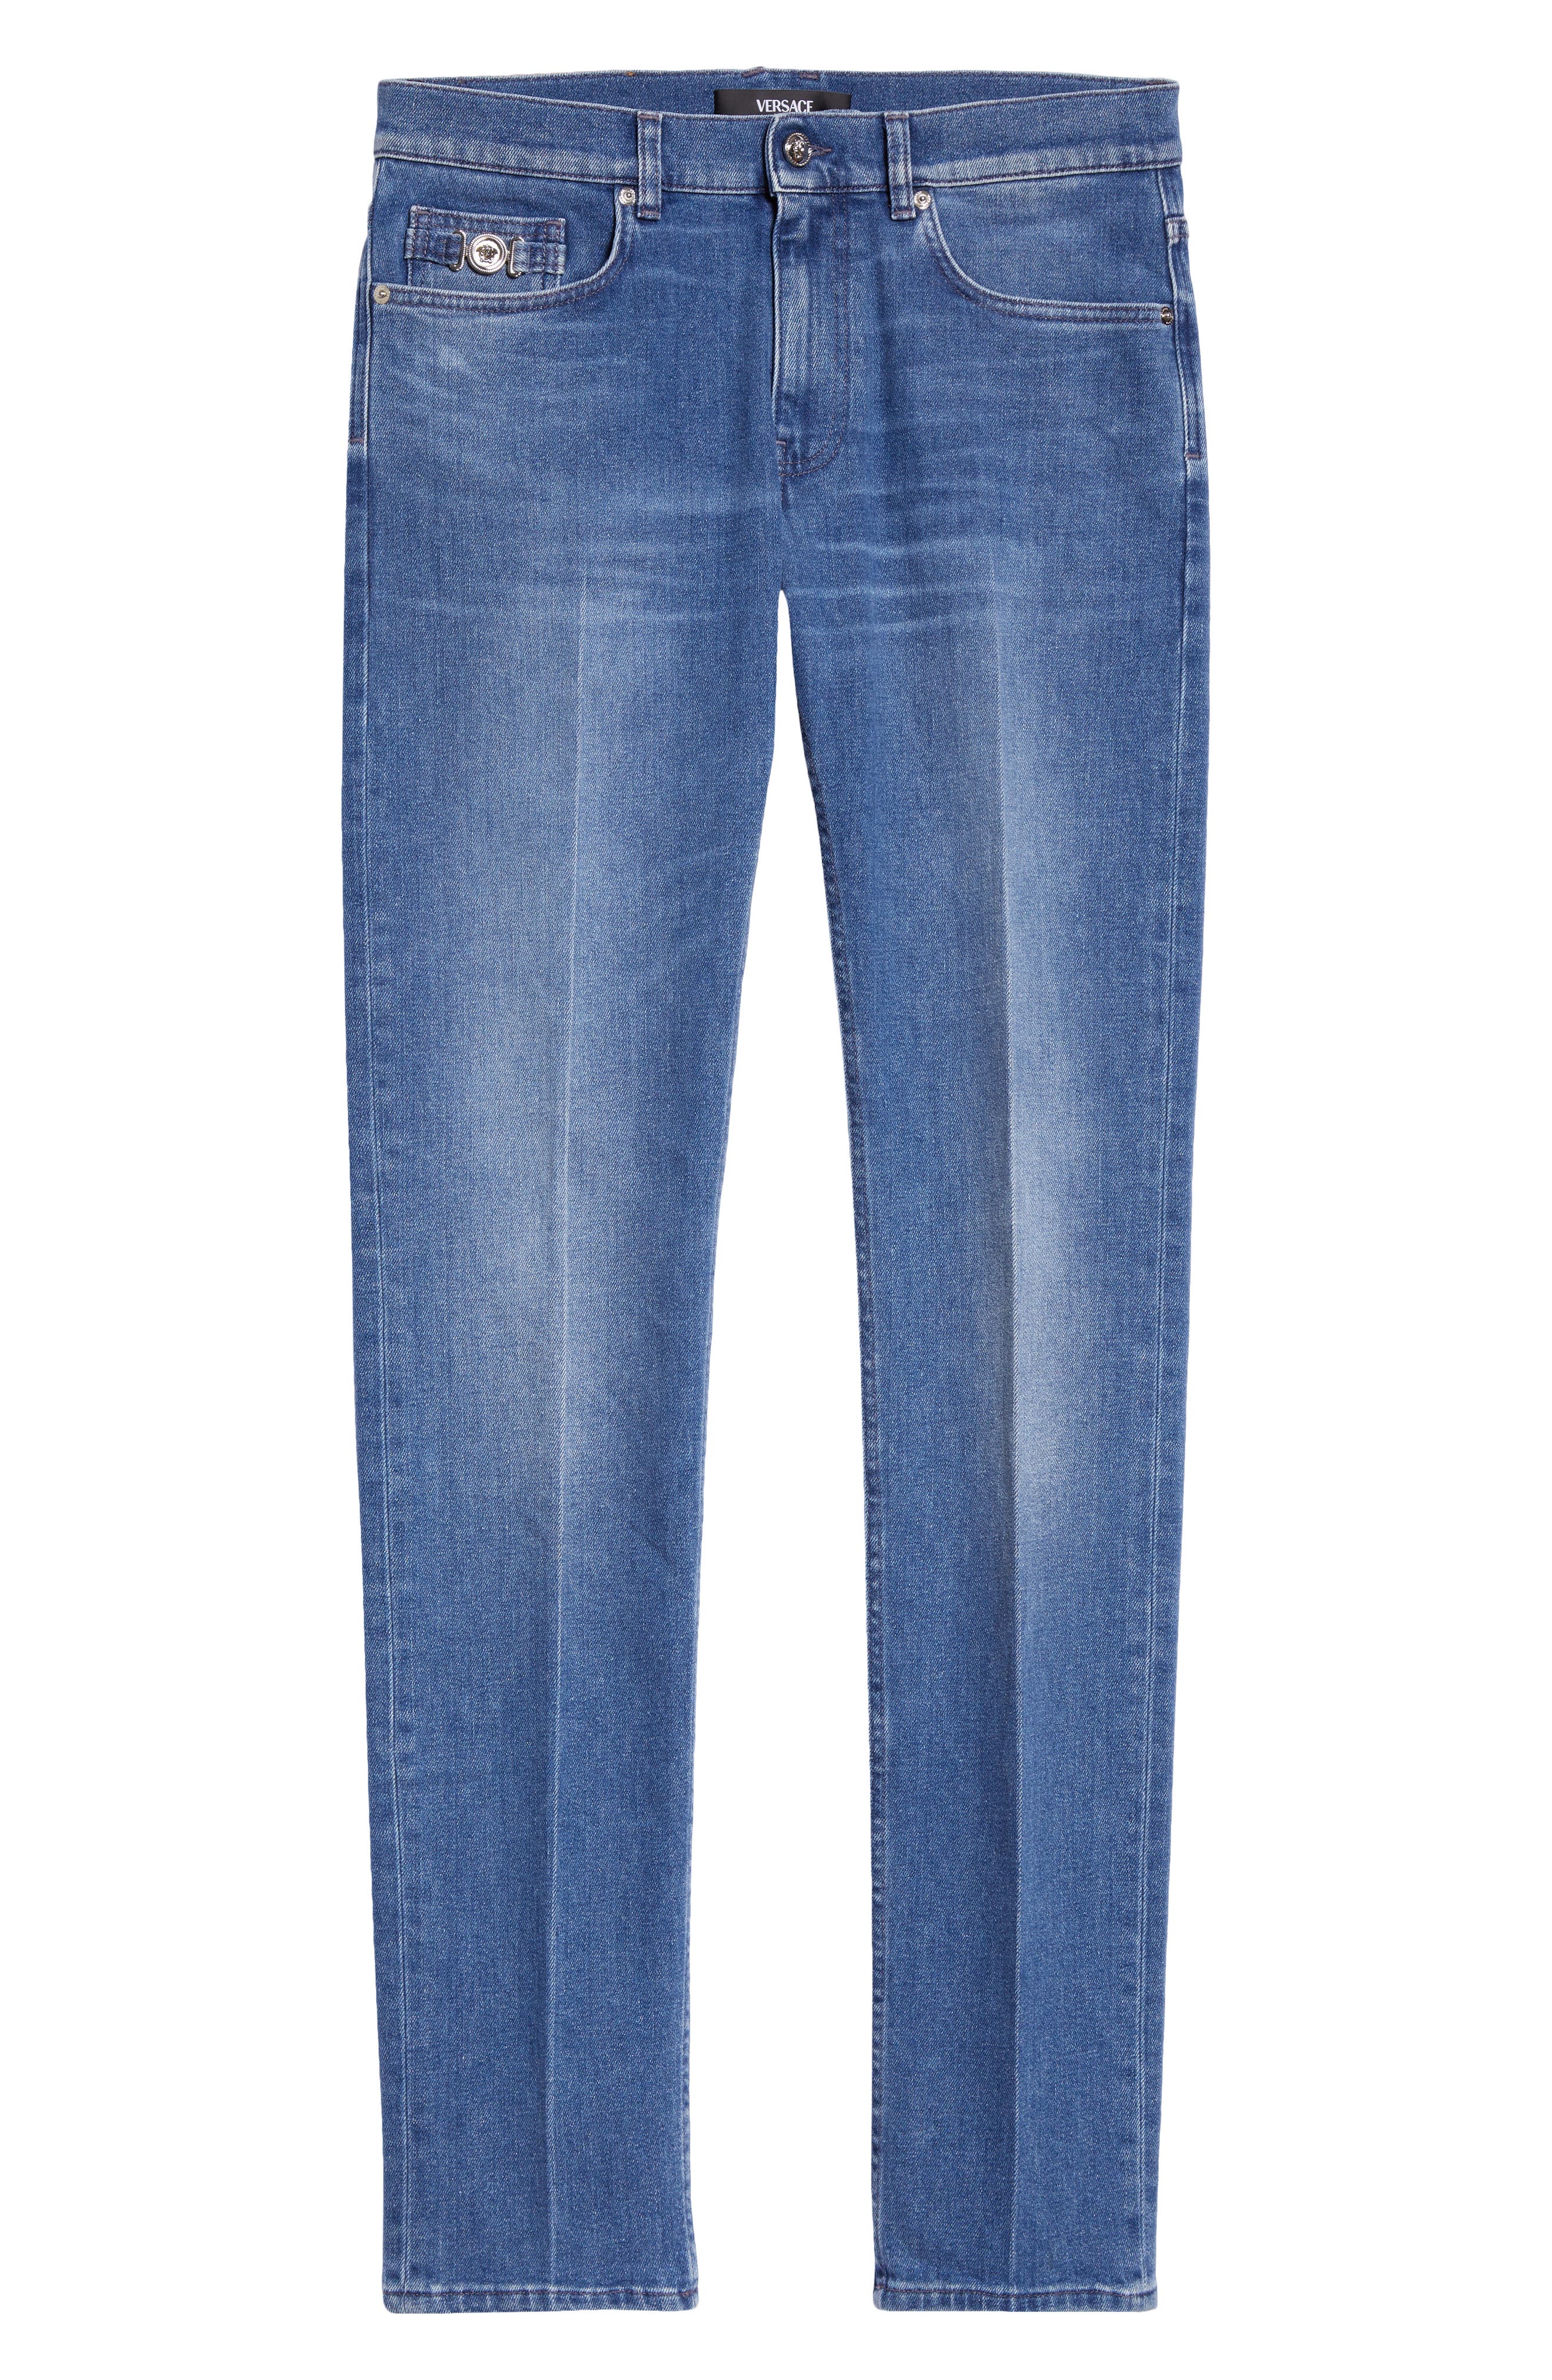 Men's Slim-Straight Basic Jeans